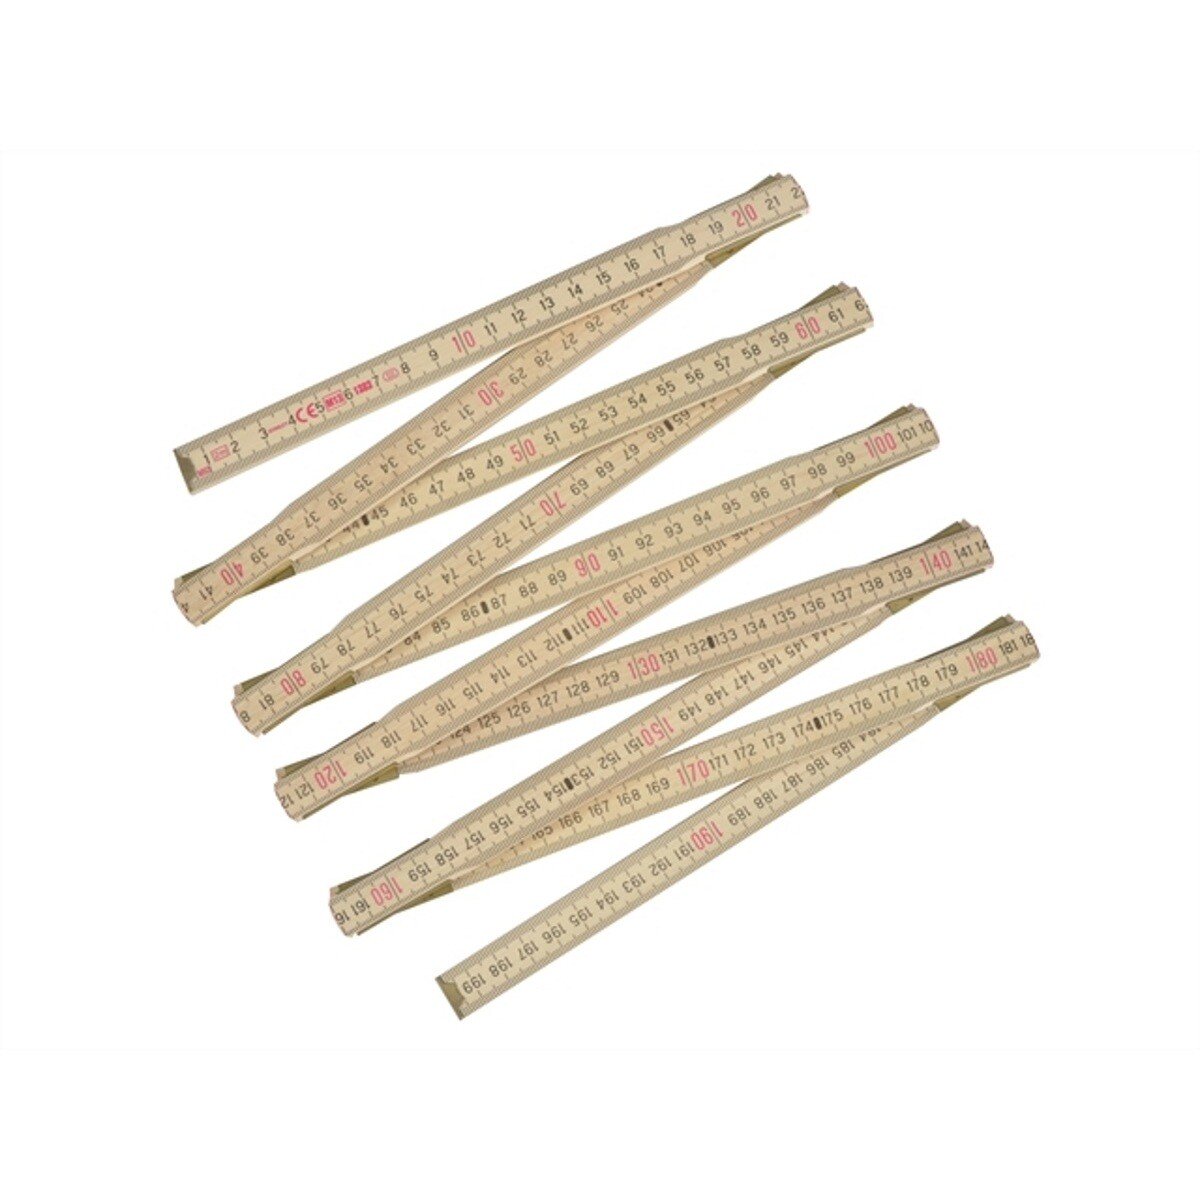 Stanley 0-35-455 Wooden Folding Rule 2m (78") STA035455